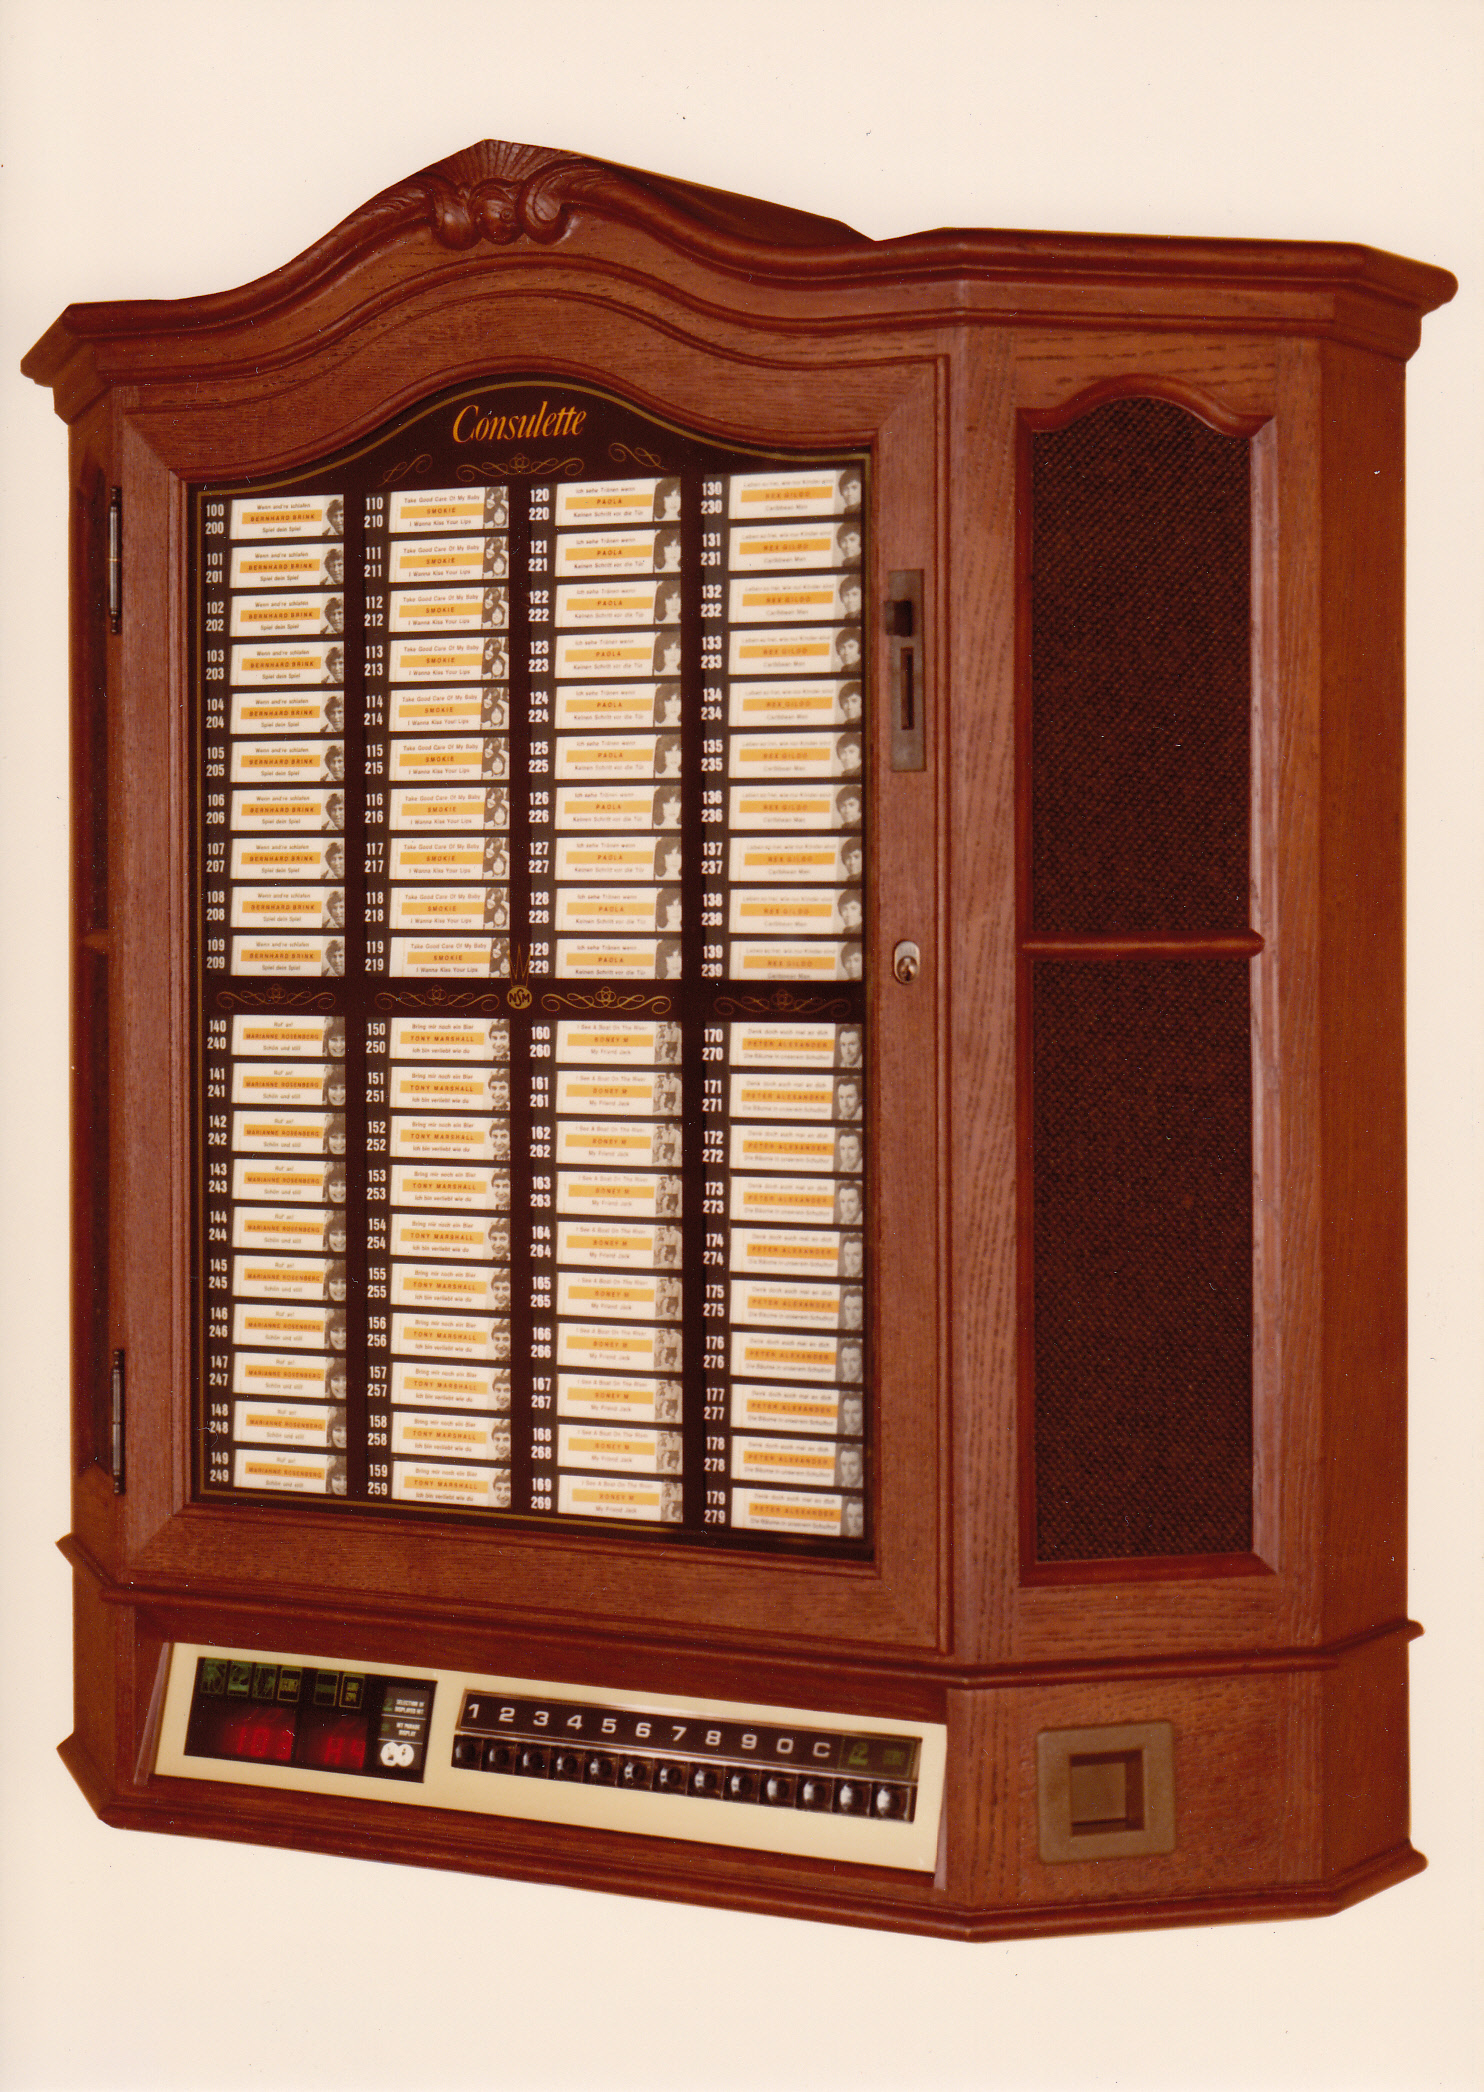 1982 consulette classic es retro jukebox